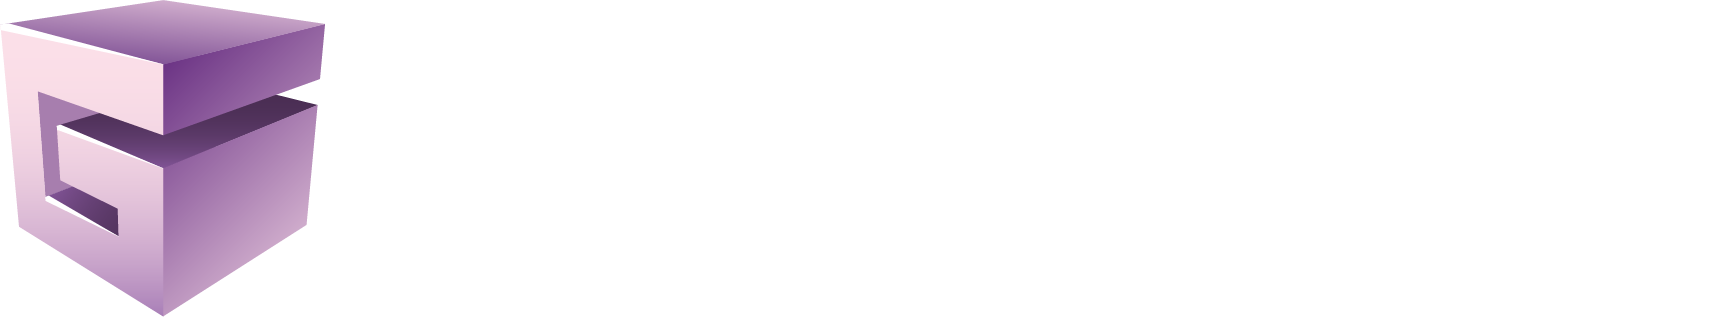 Giper-NN